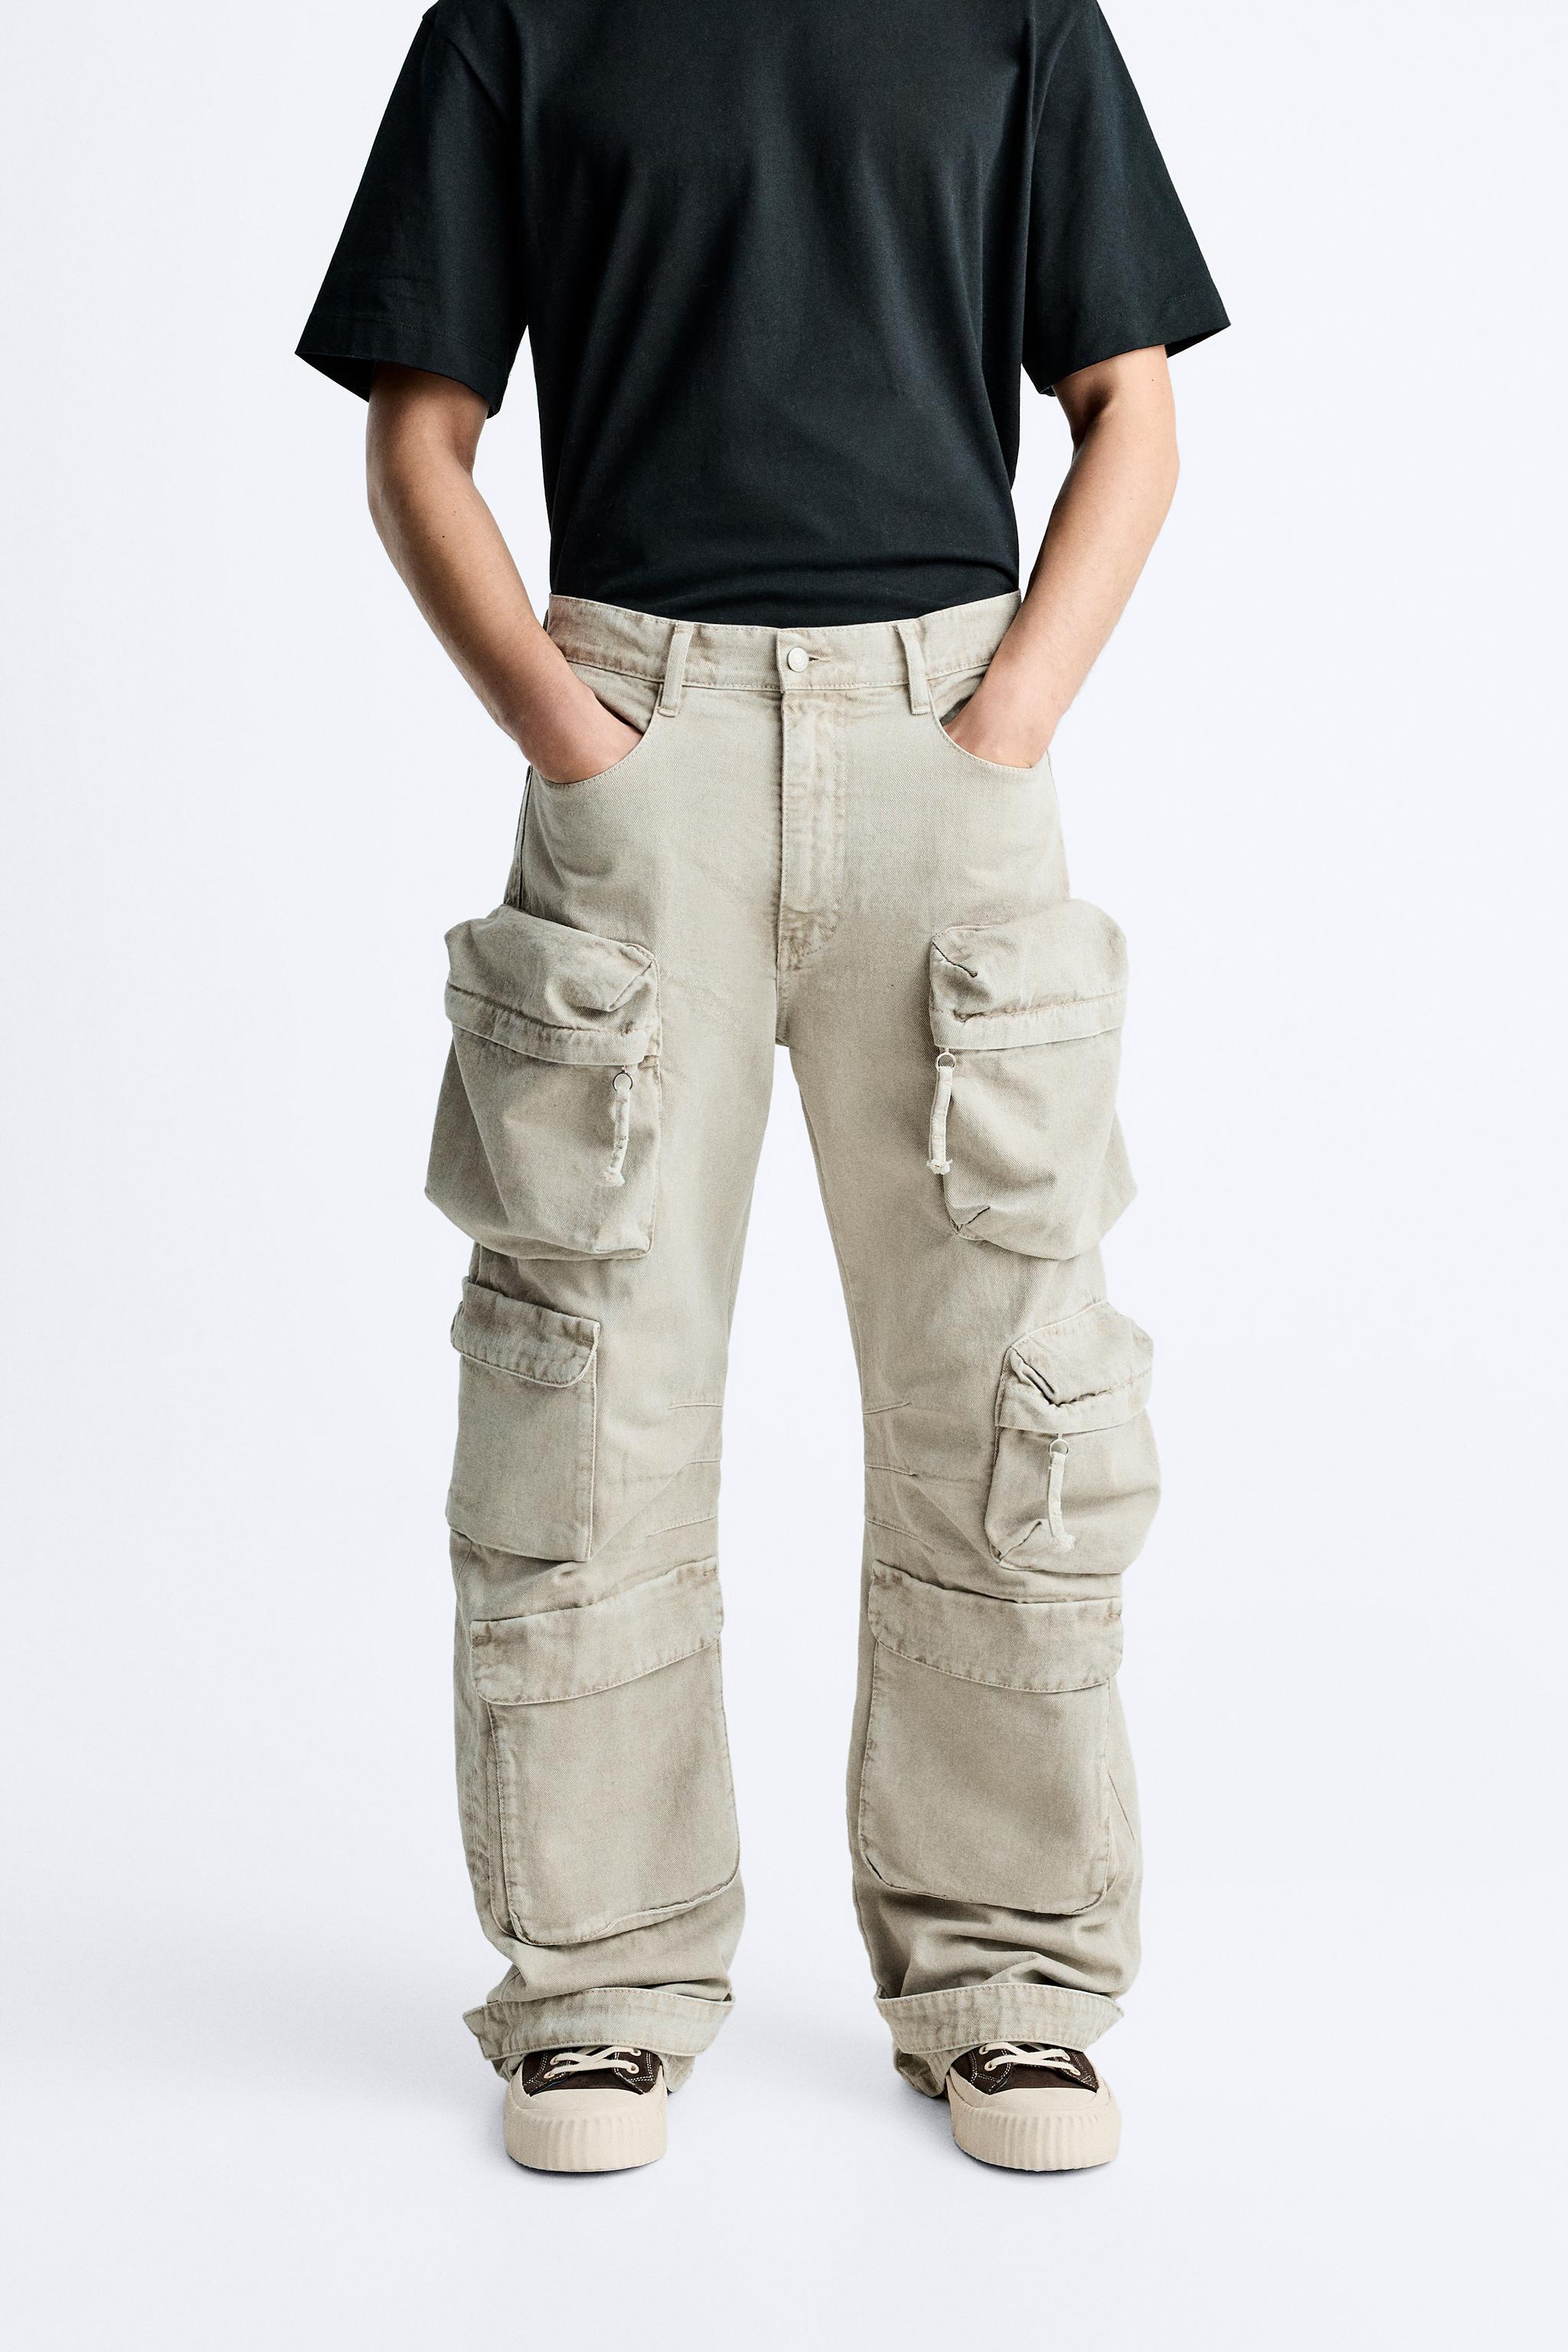 Zara Zipped Cargo Trousers